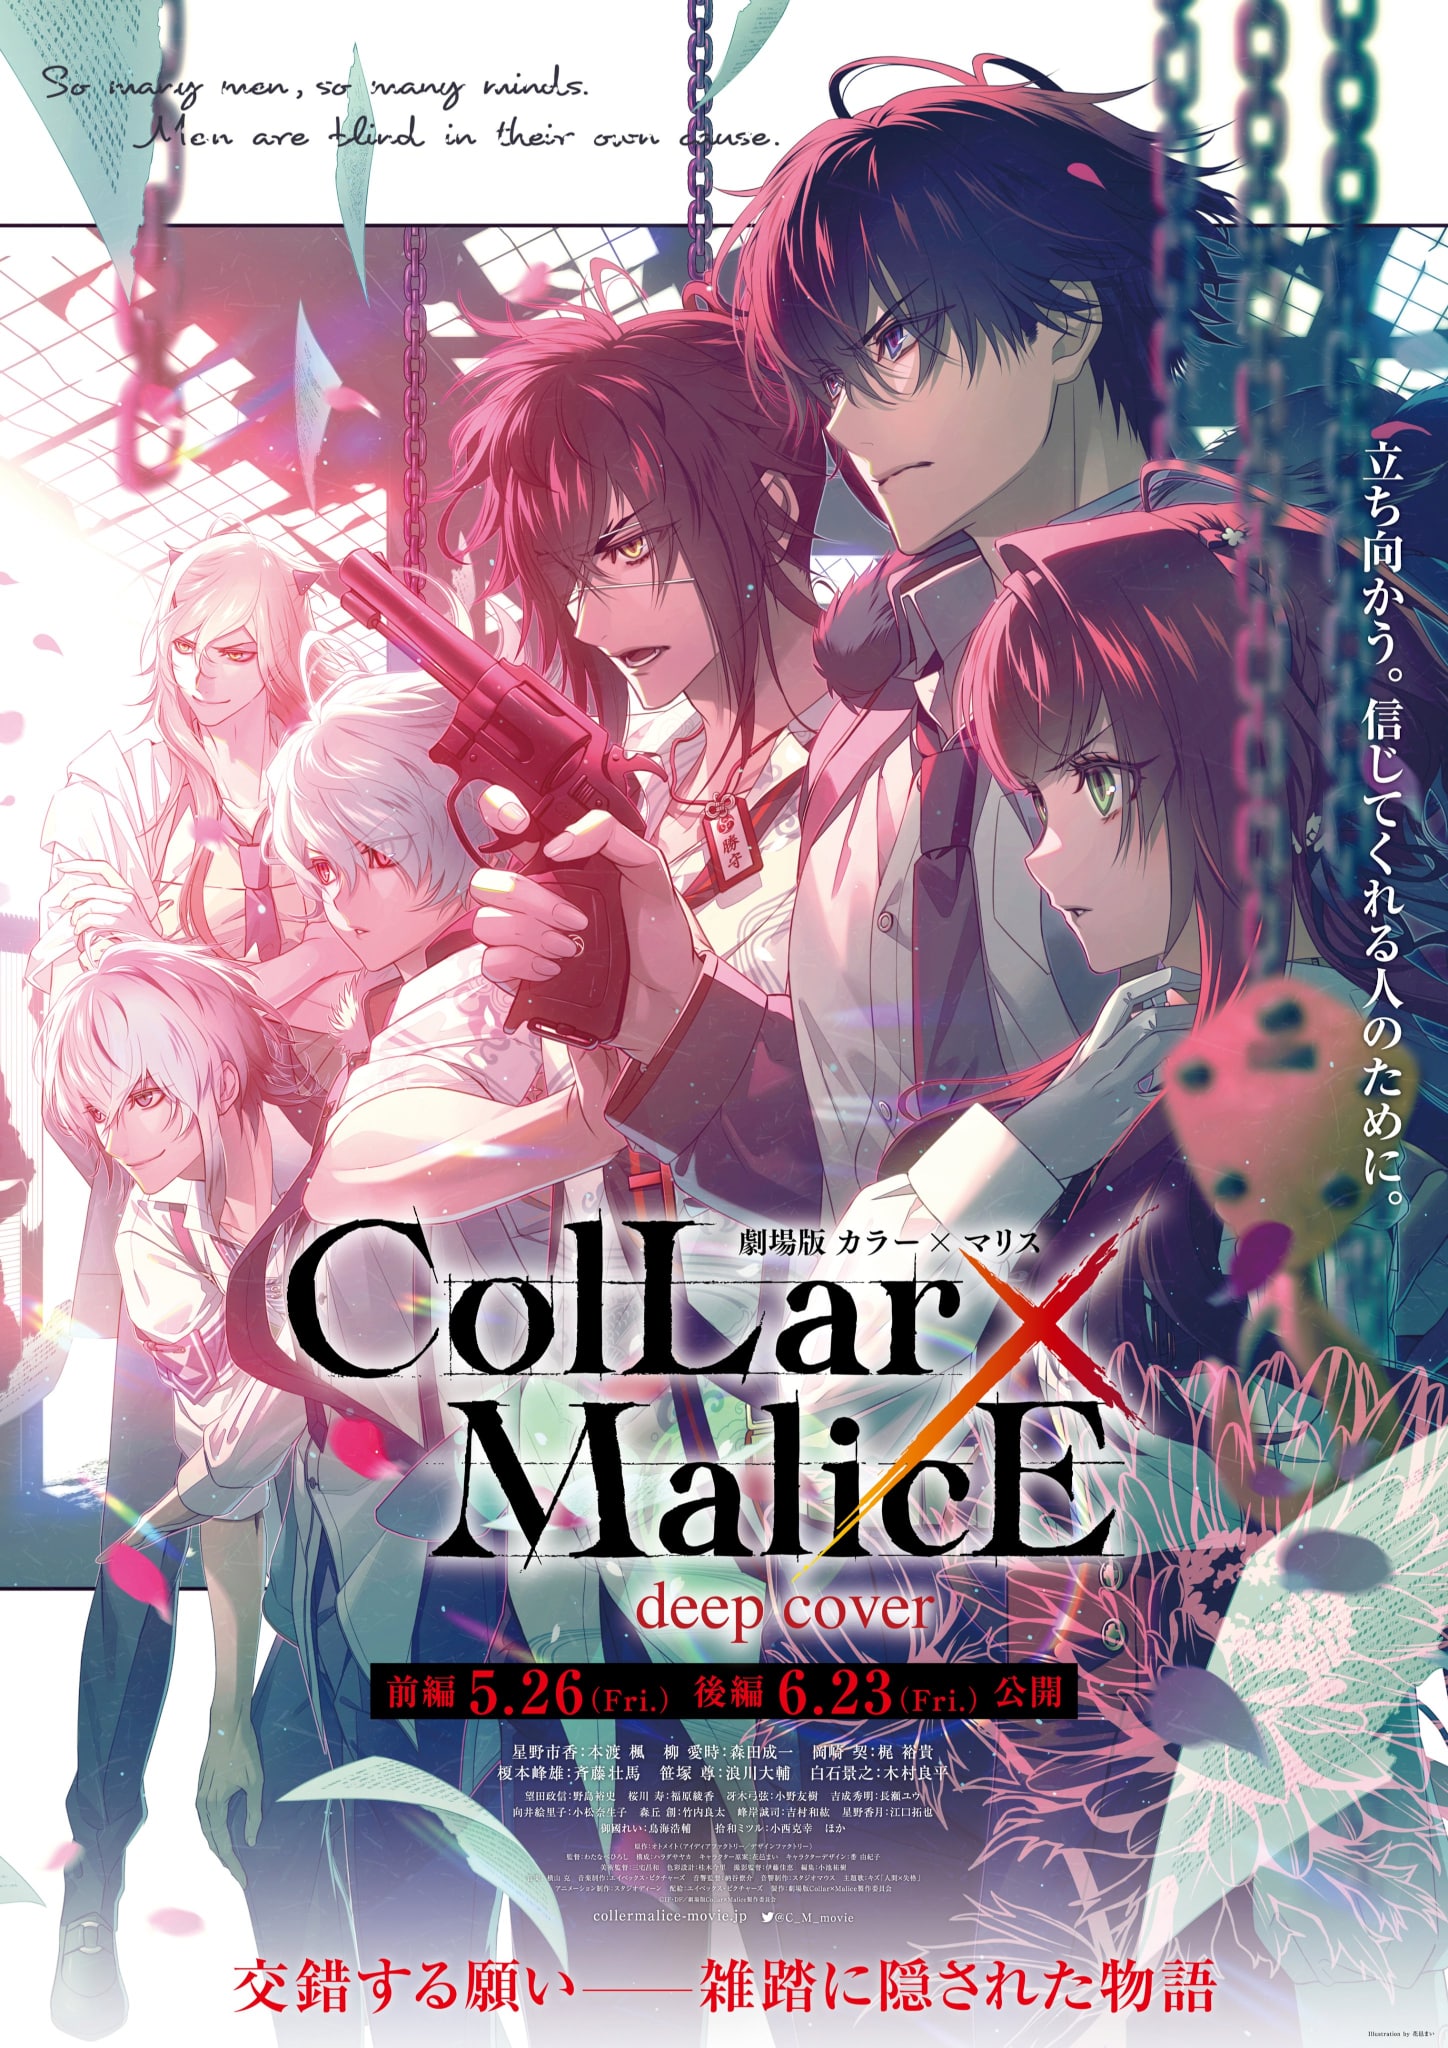 Annonce de la date de sortie pour le film Collar x Malice -deep cover-